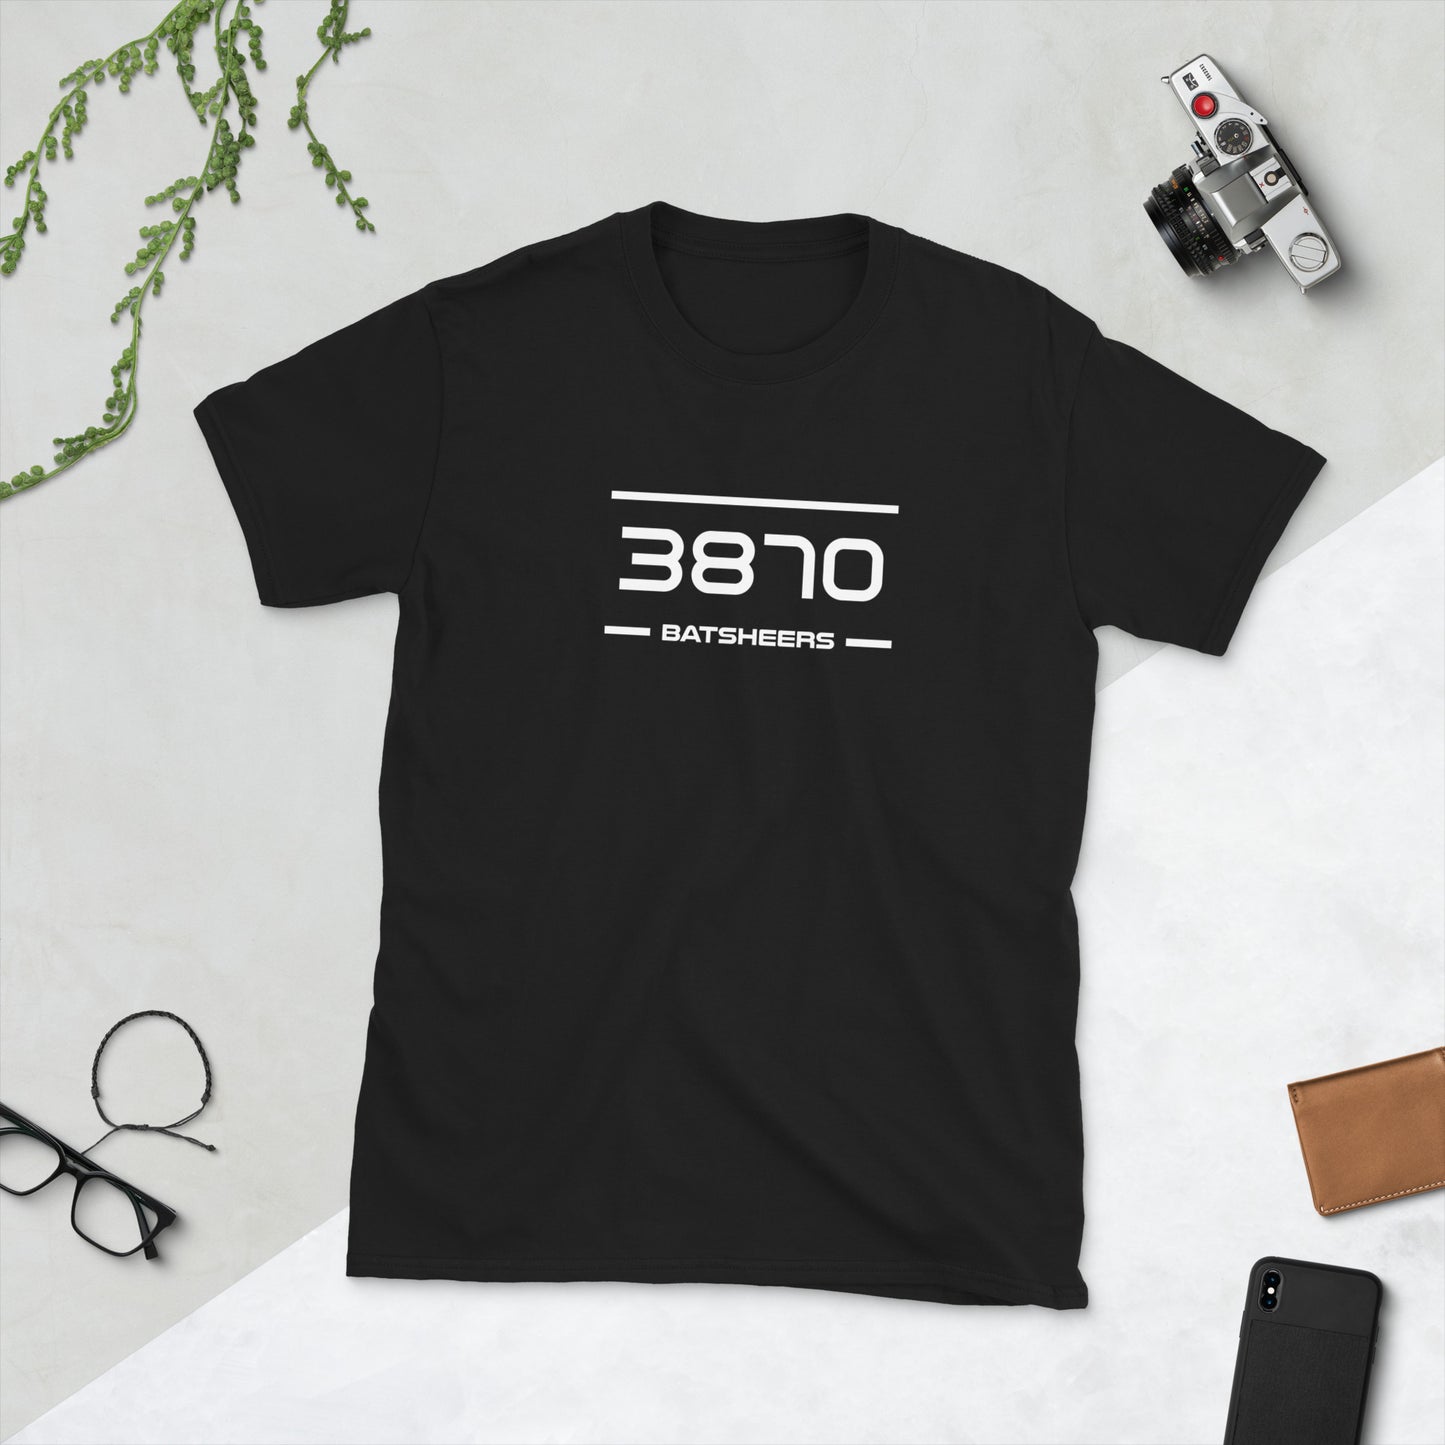 Tshirt - 3870 - Batsheers